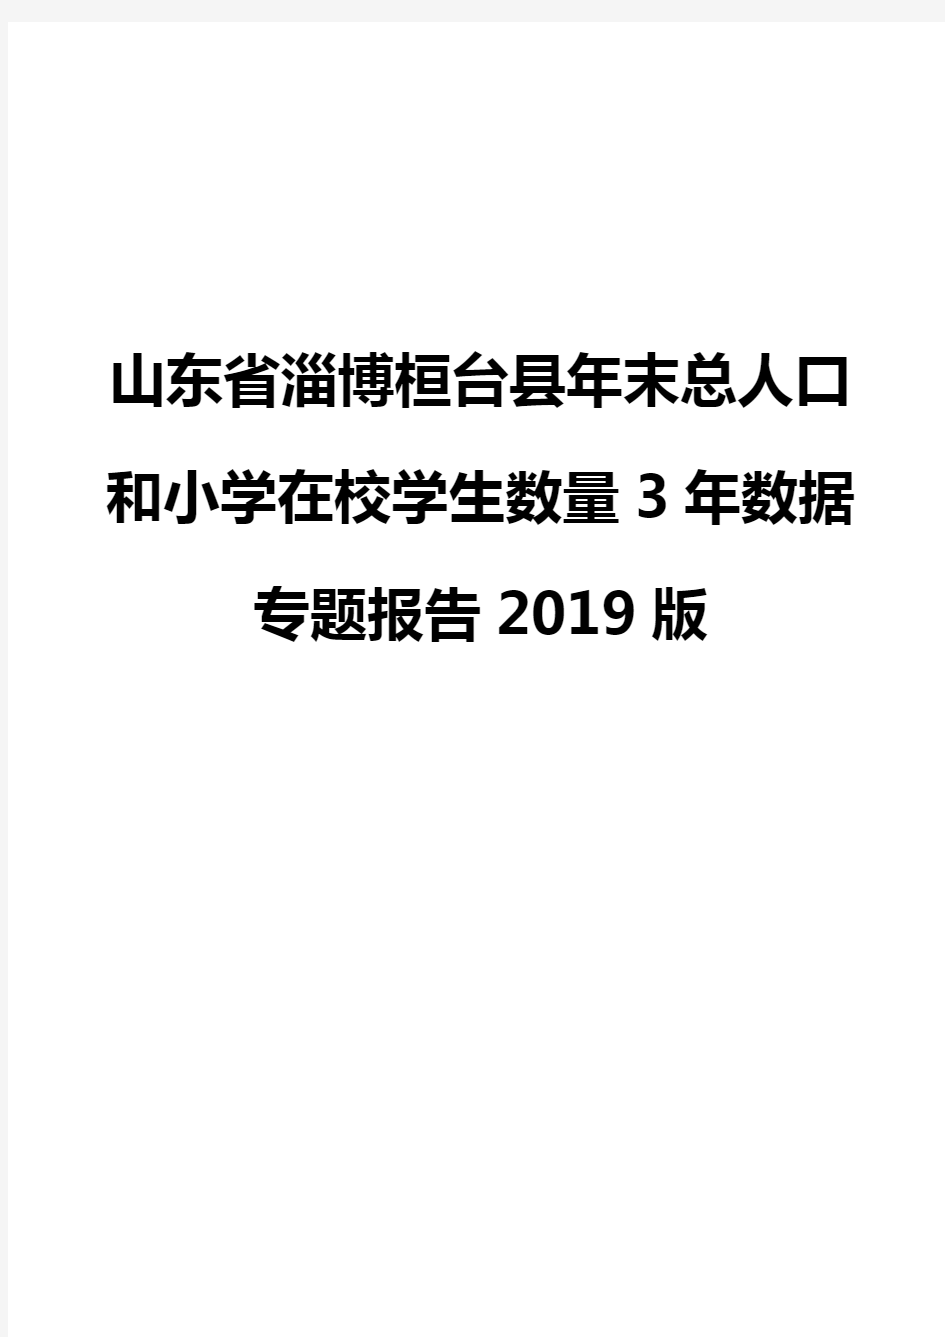 山东省淄博桓台县年末总人口和小学在校学生数量3年数据专题报告2019版